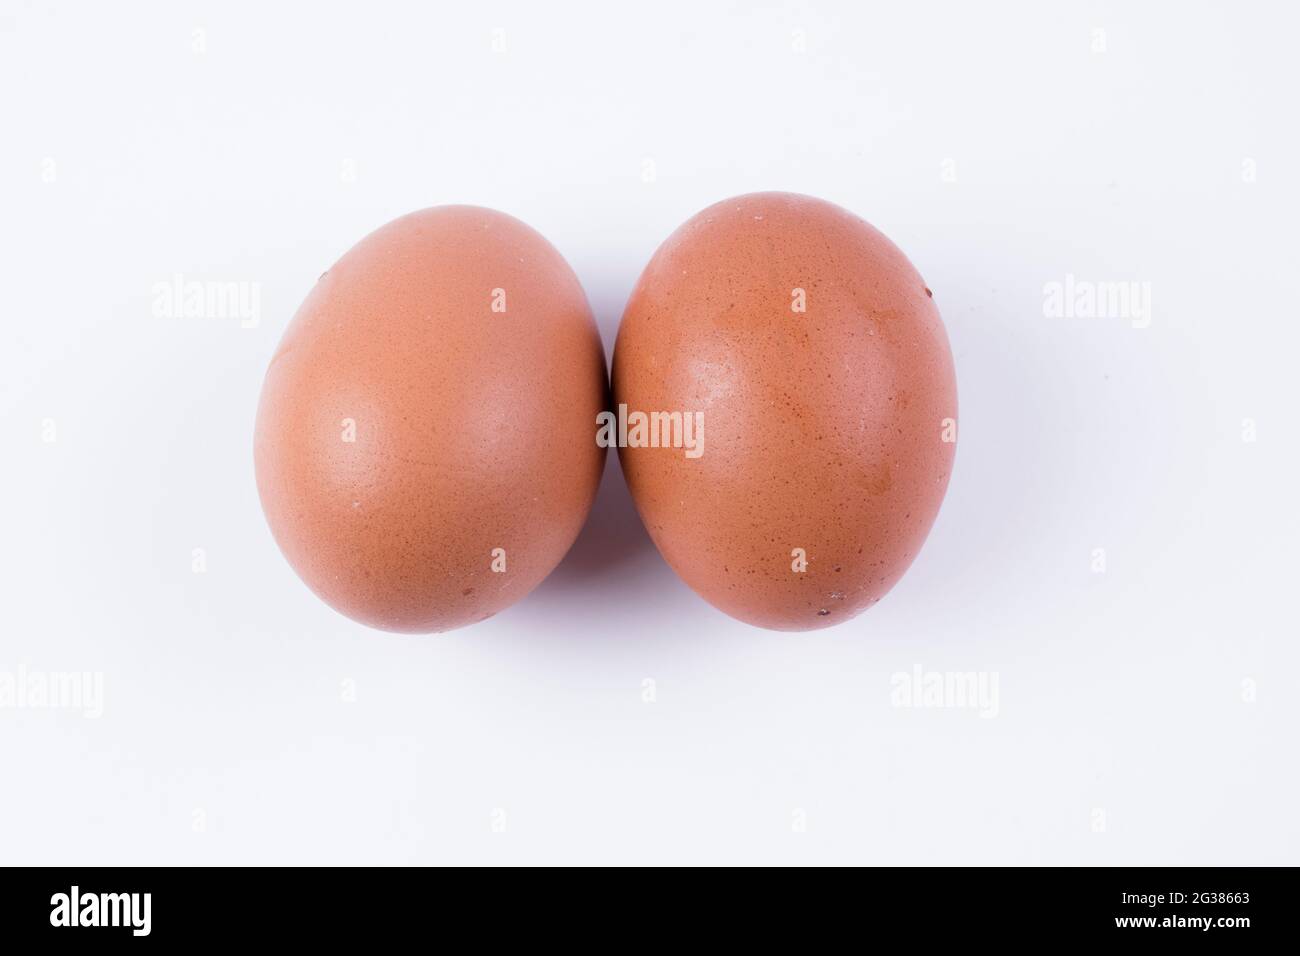 Hühnereier. Die Eier von Vögeln sind eine gängige Nahrung in der Ernährung von Menschen. Sie werden durch eine Schale geschützt und sind reich an Proteinen, vor allem Albumin, die Stockfoto